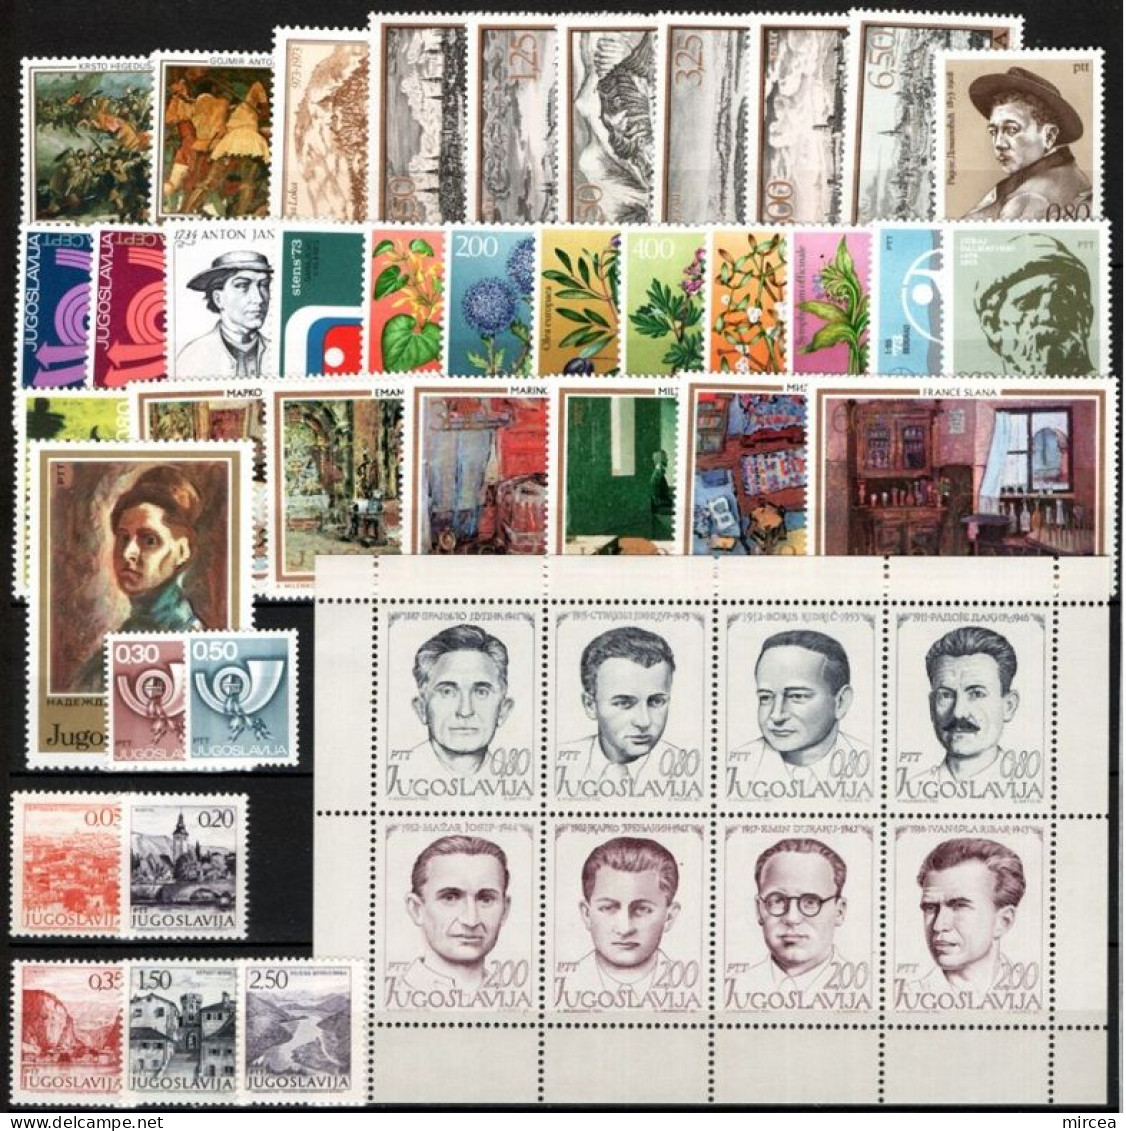 C5471 - Yougoslavie 1973 - Annee Complete,timbres Neufs** - Années Complètes